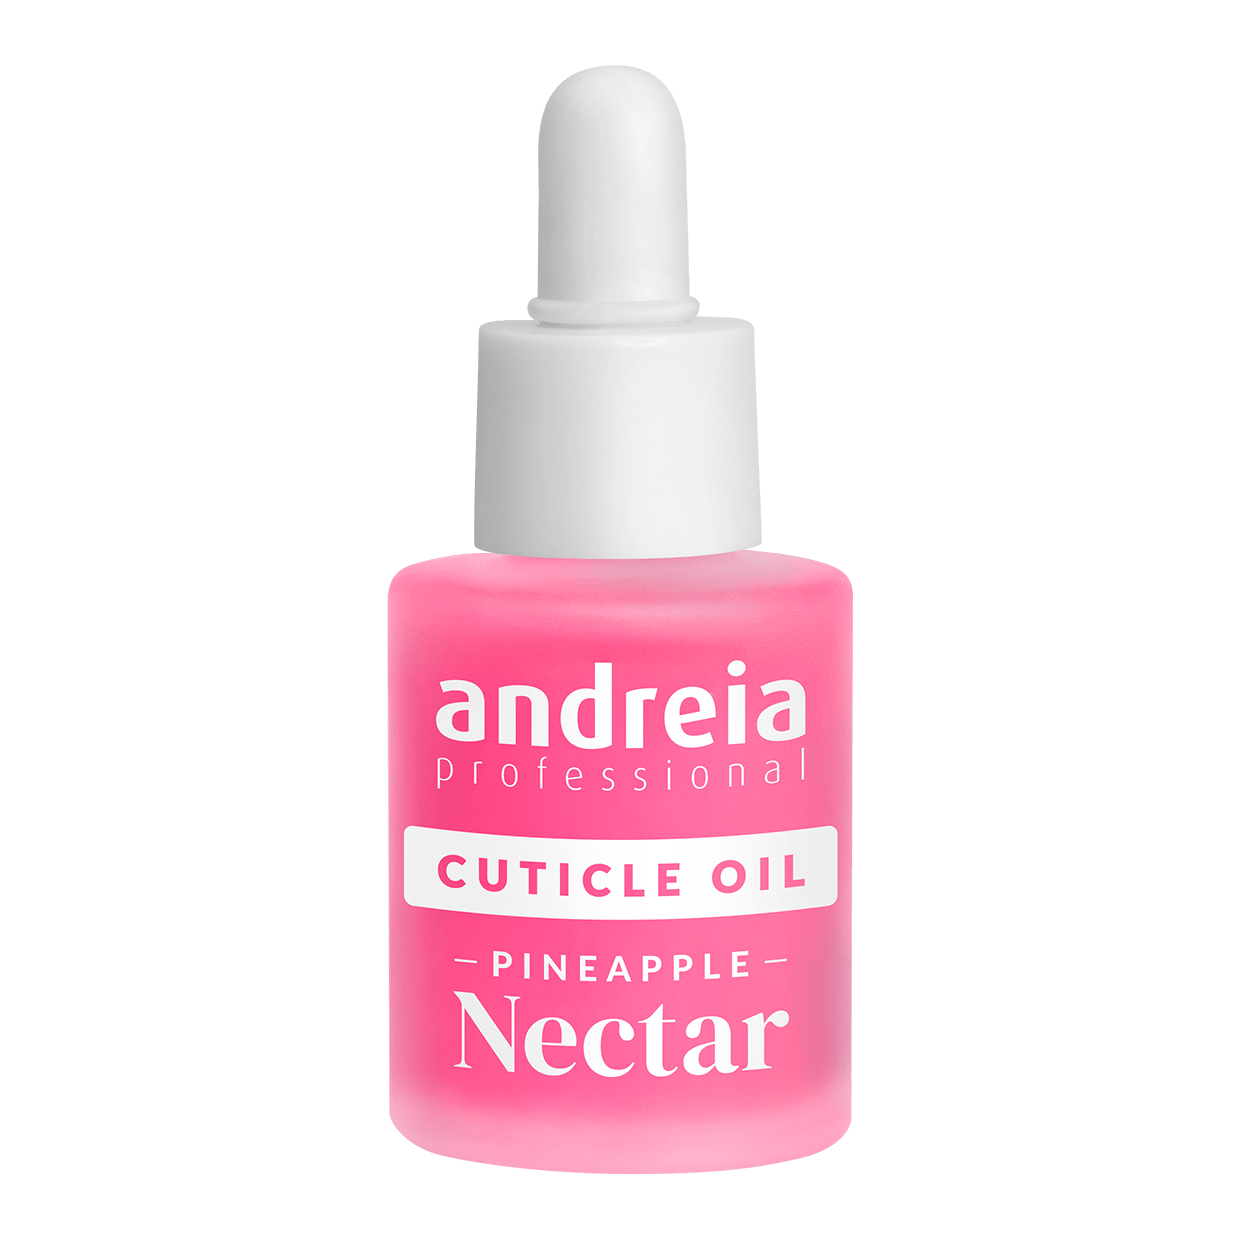 Andreia Professional Nectar Cuticle Oil Piña